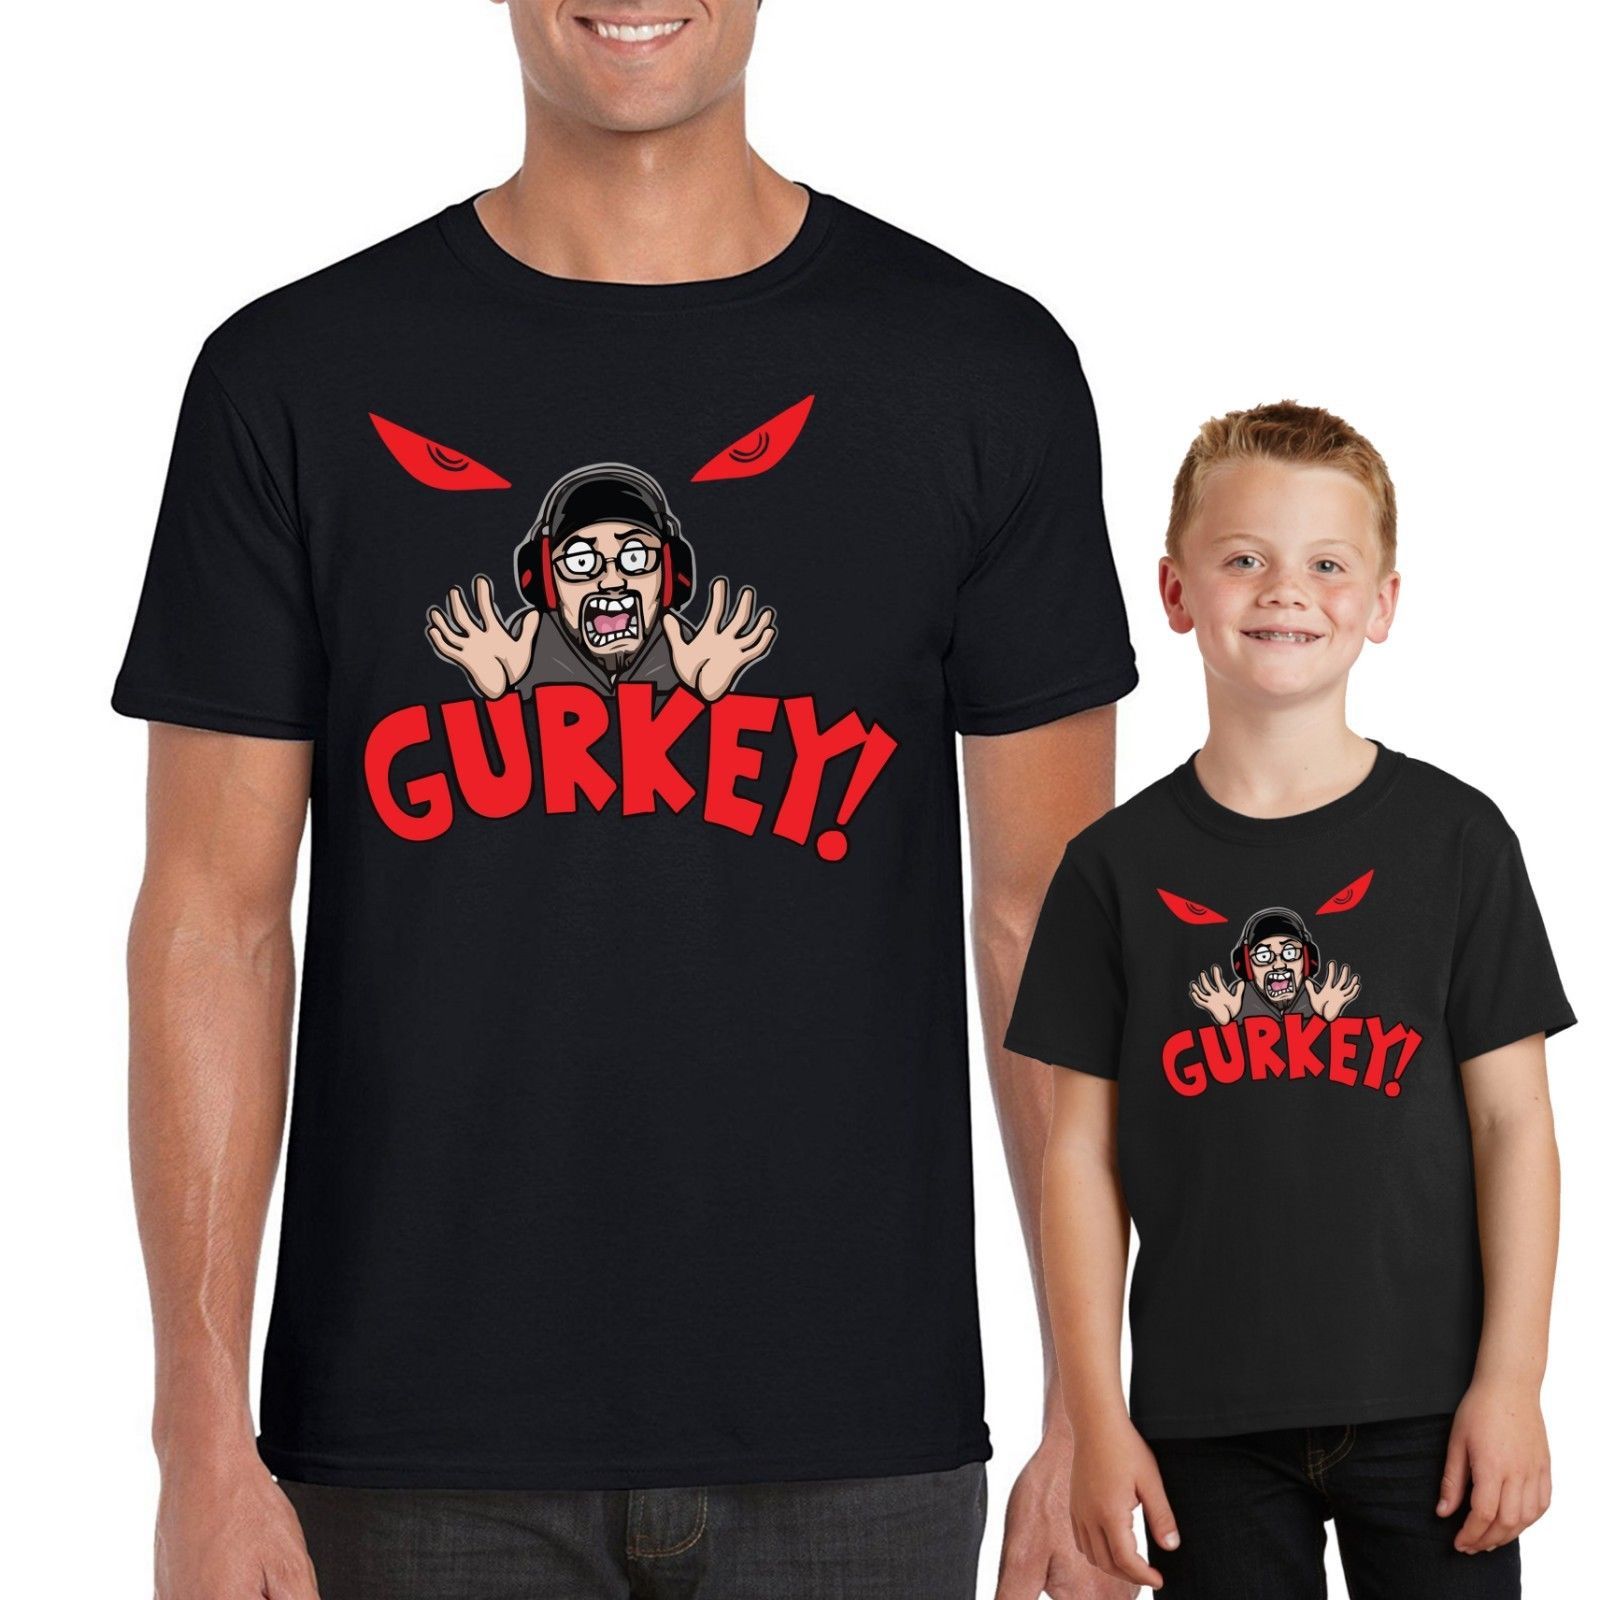 Gurkey Hot Popular Items - glitches roblox t shirts teeherivar